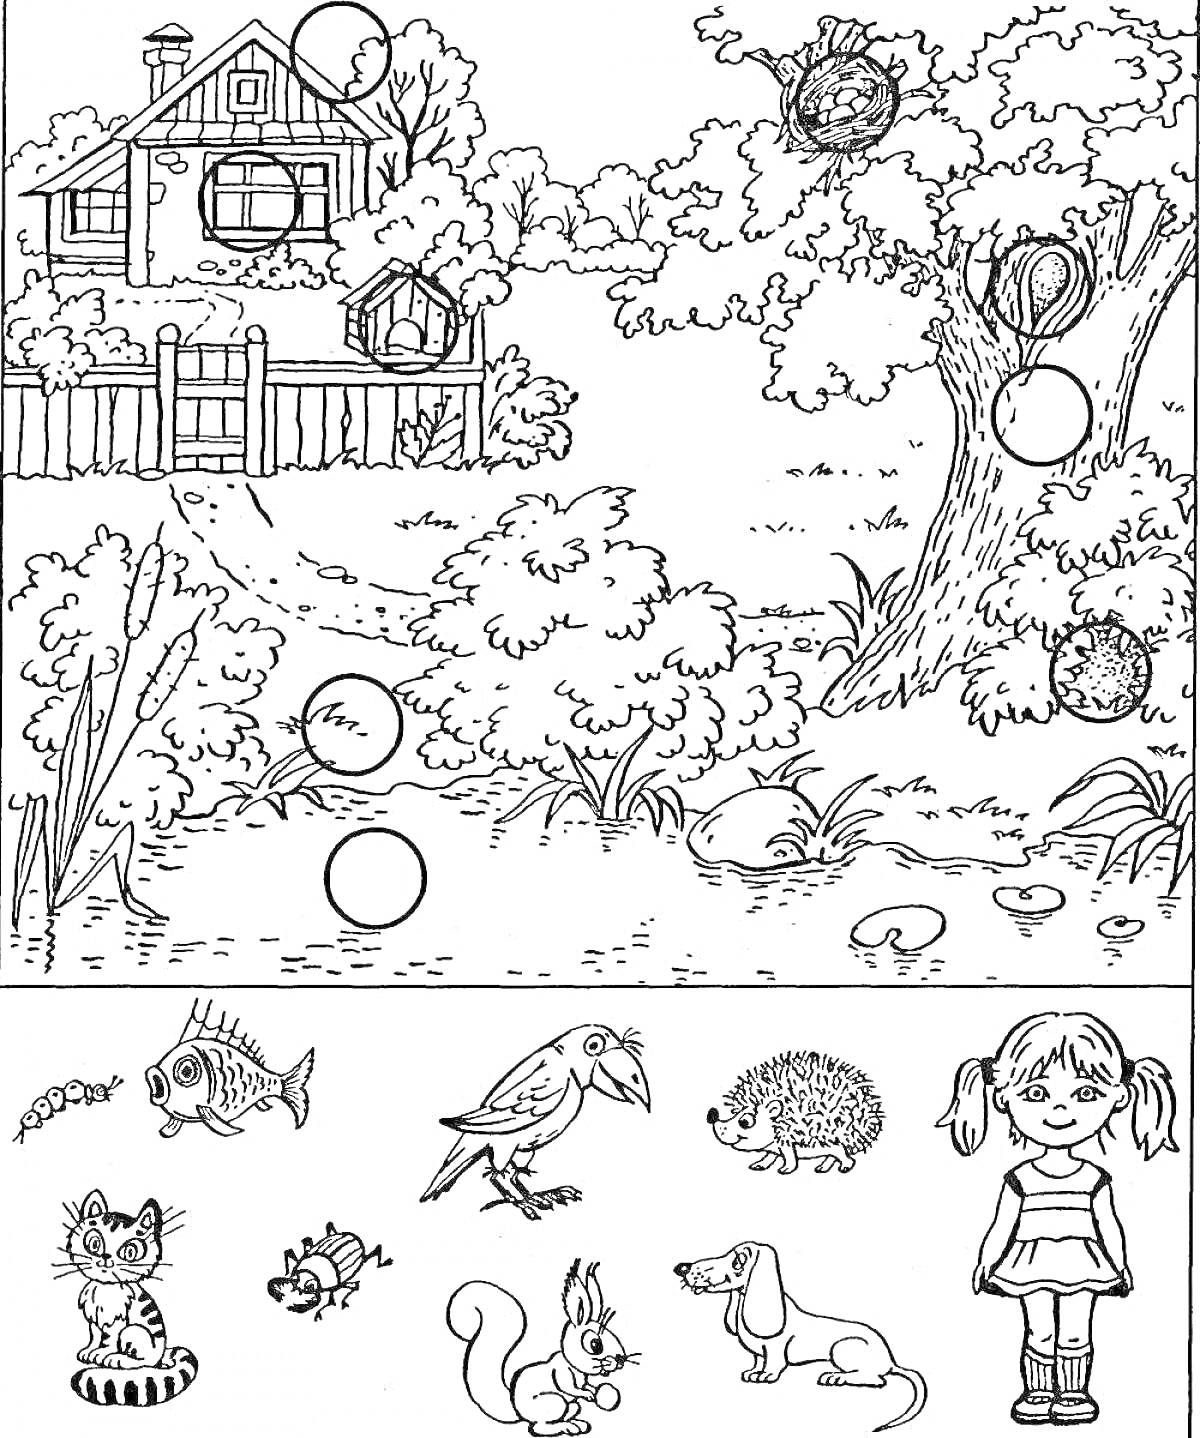 Раскраска Дом, лес, дерево, трава, отдельно - гусеница, кот, рыба, птица, белка, ёжик, заяц, бабочка, собака, девочка.